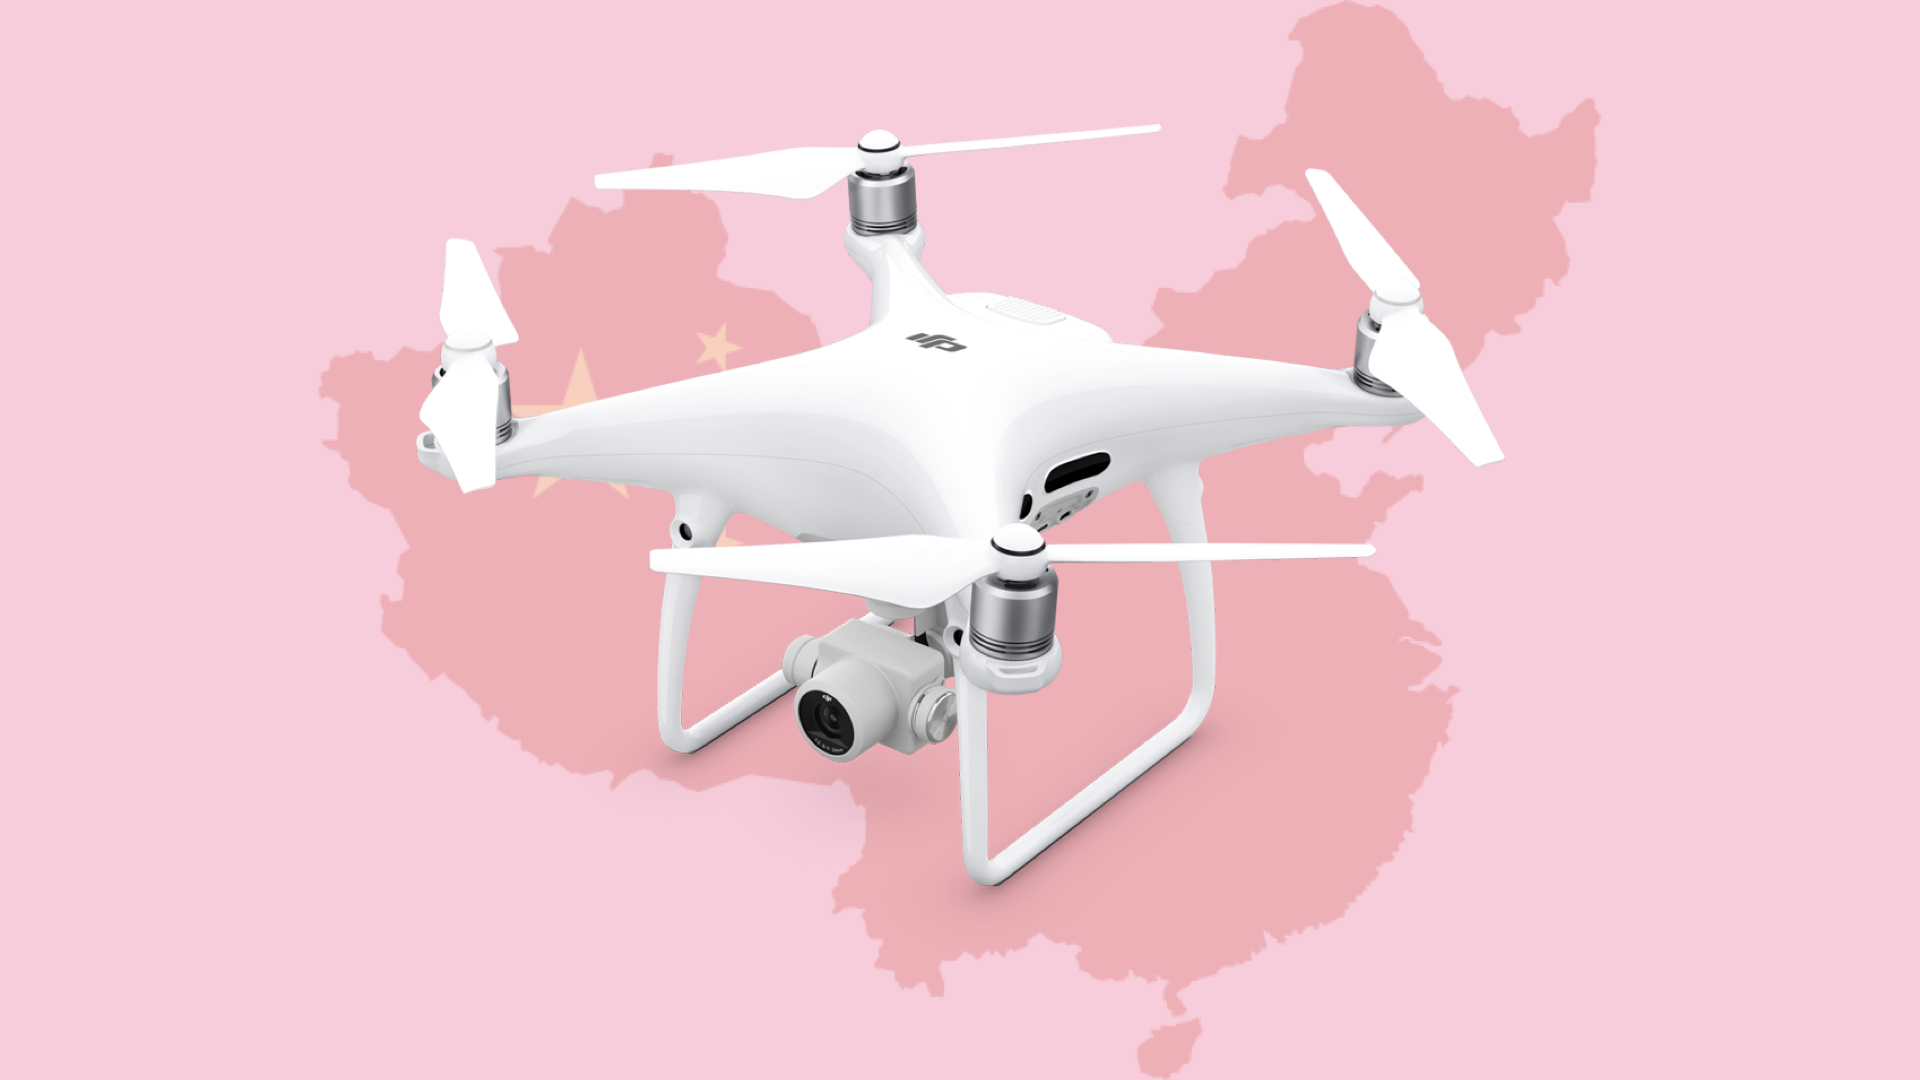 First batch of SOTEN drones, Japan's DJI alternative, arrives in US